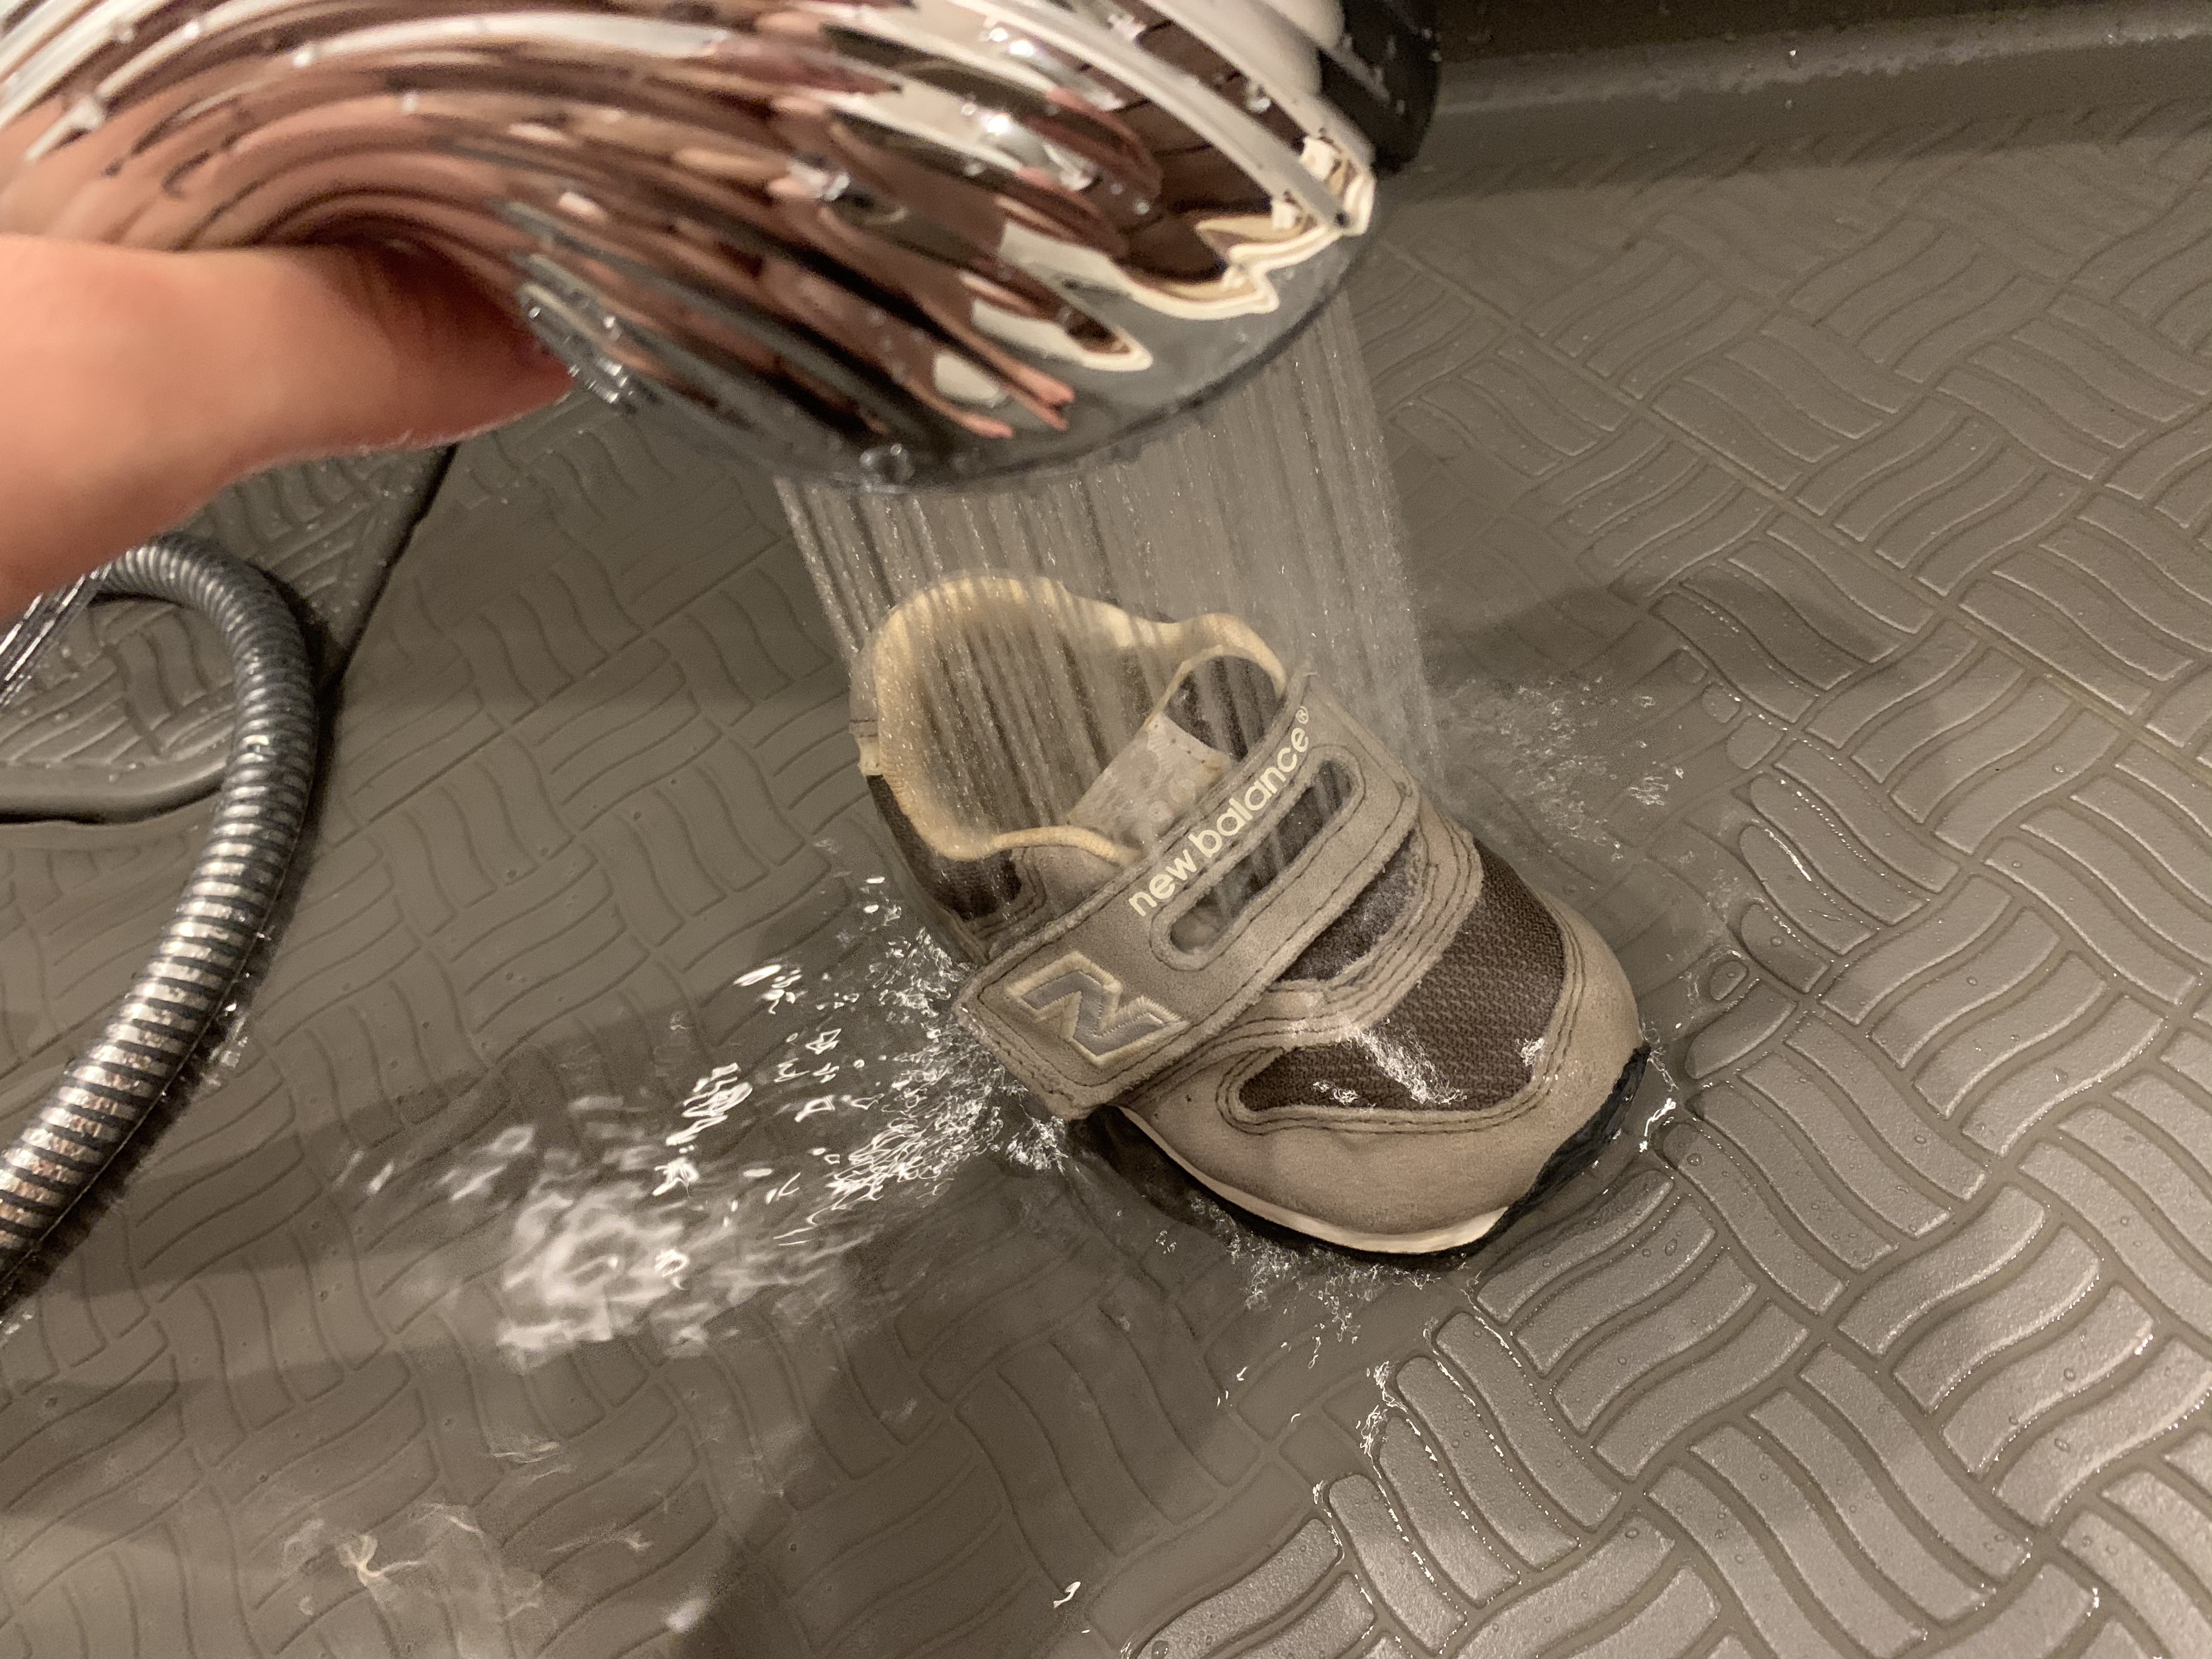 ReFaのシャワーヘッドで汚れた靴を洗ってみたらすごかった